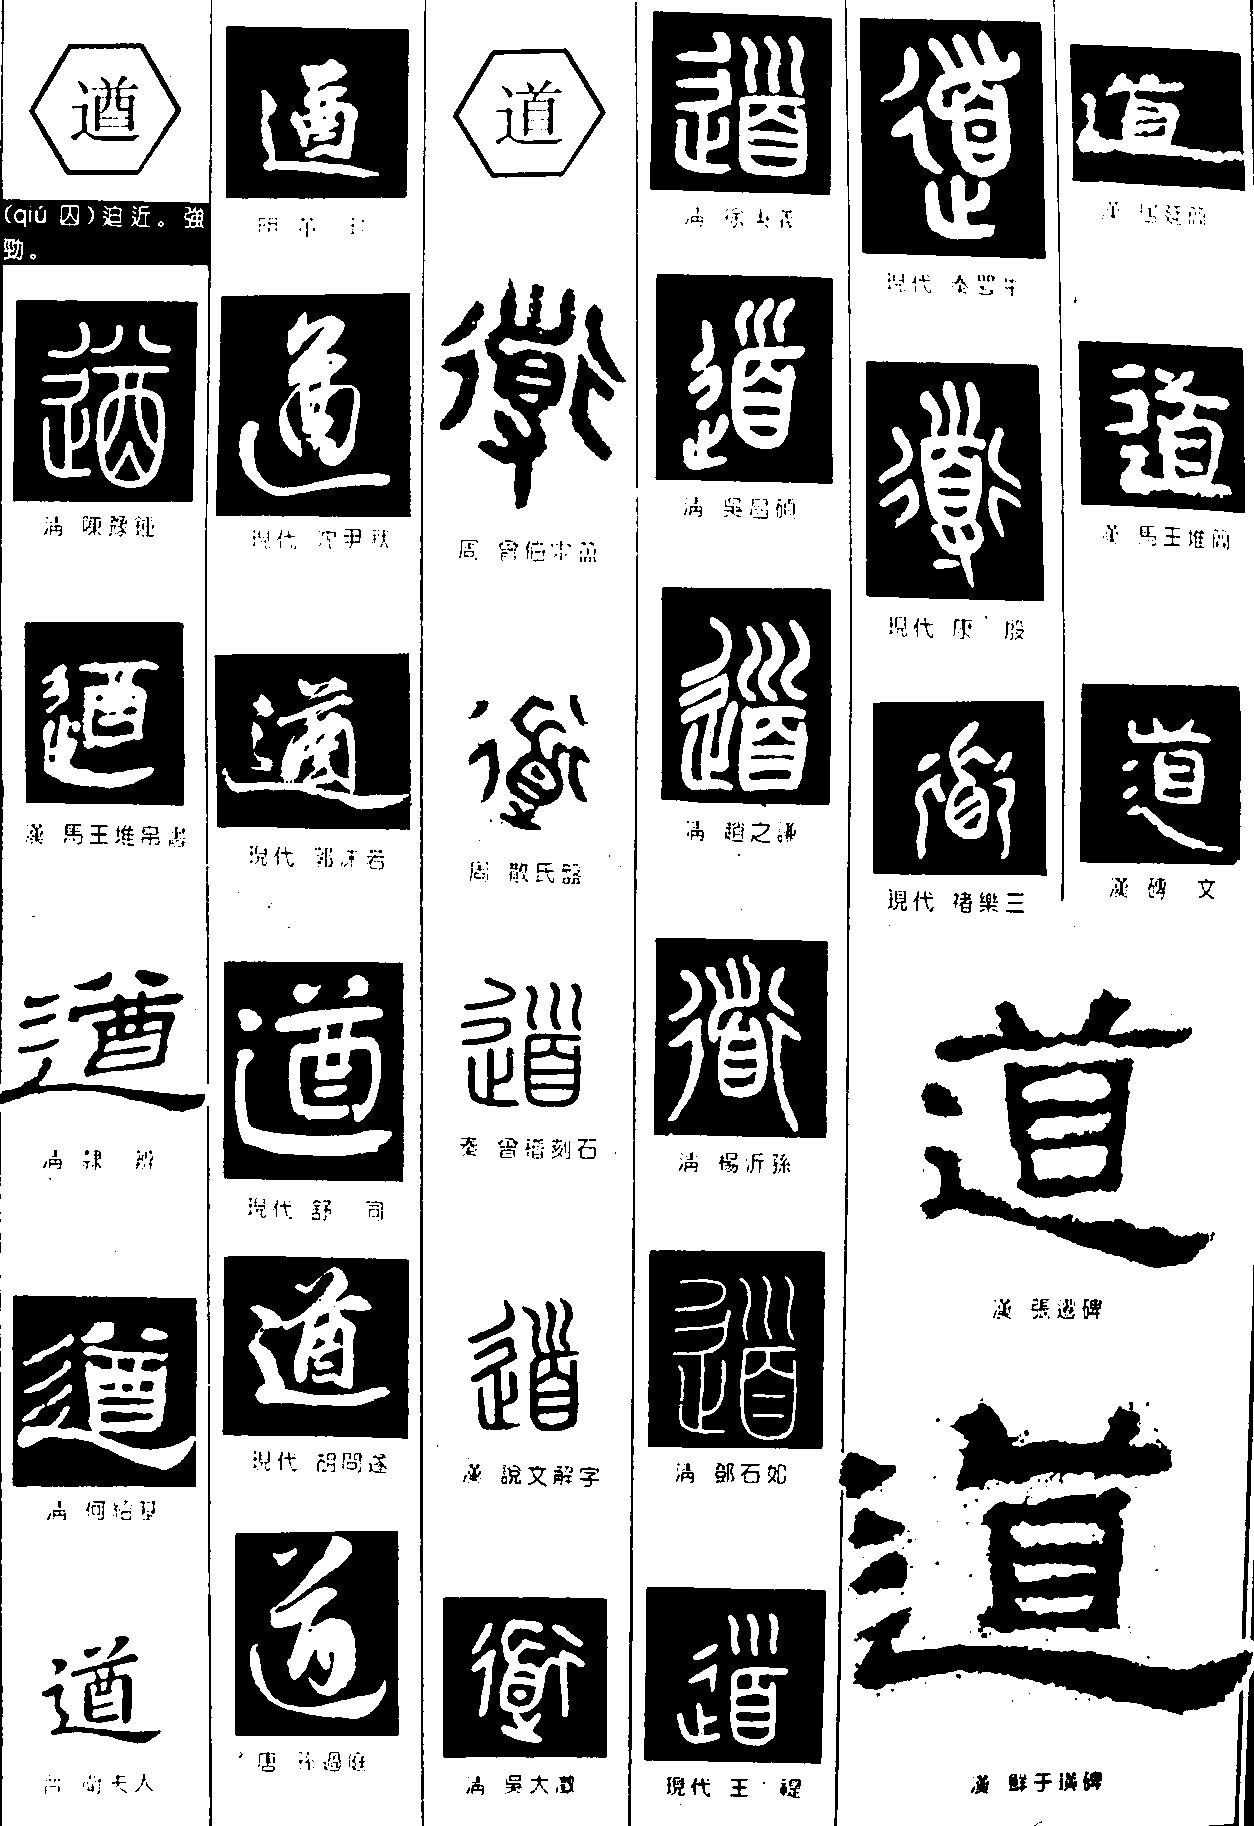 遒道_书法字体_字体设计作品-中国字体设计网_ziti.